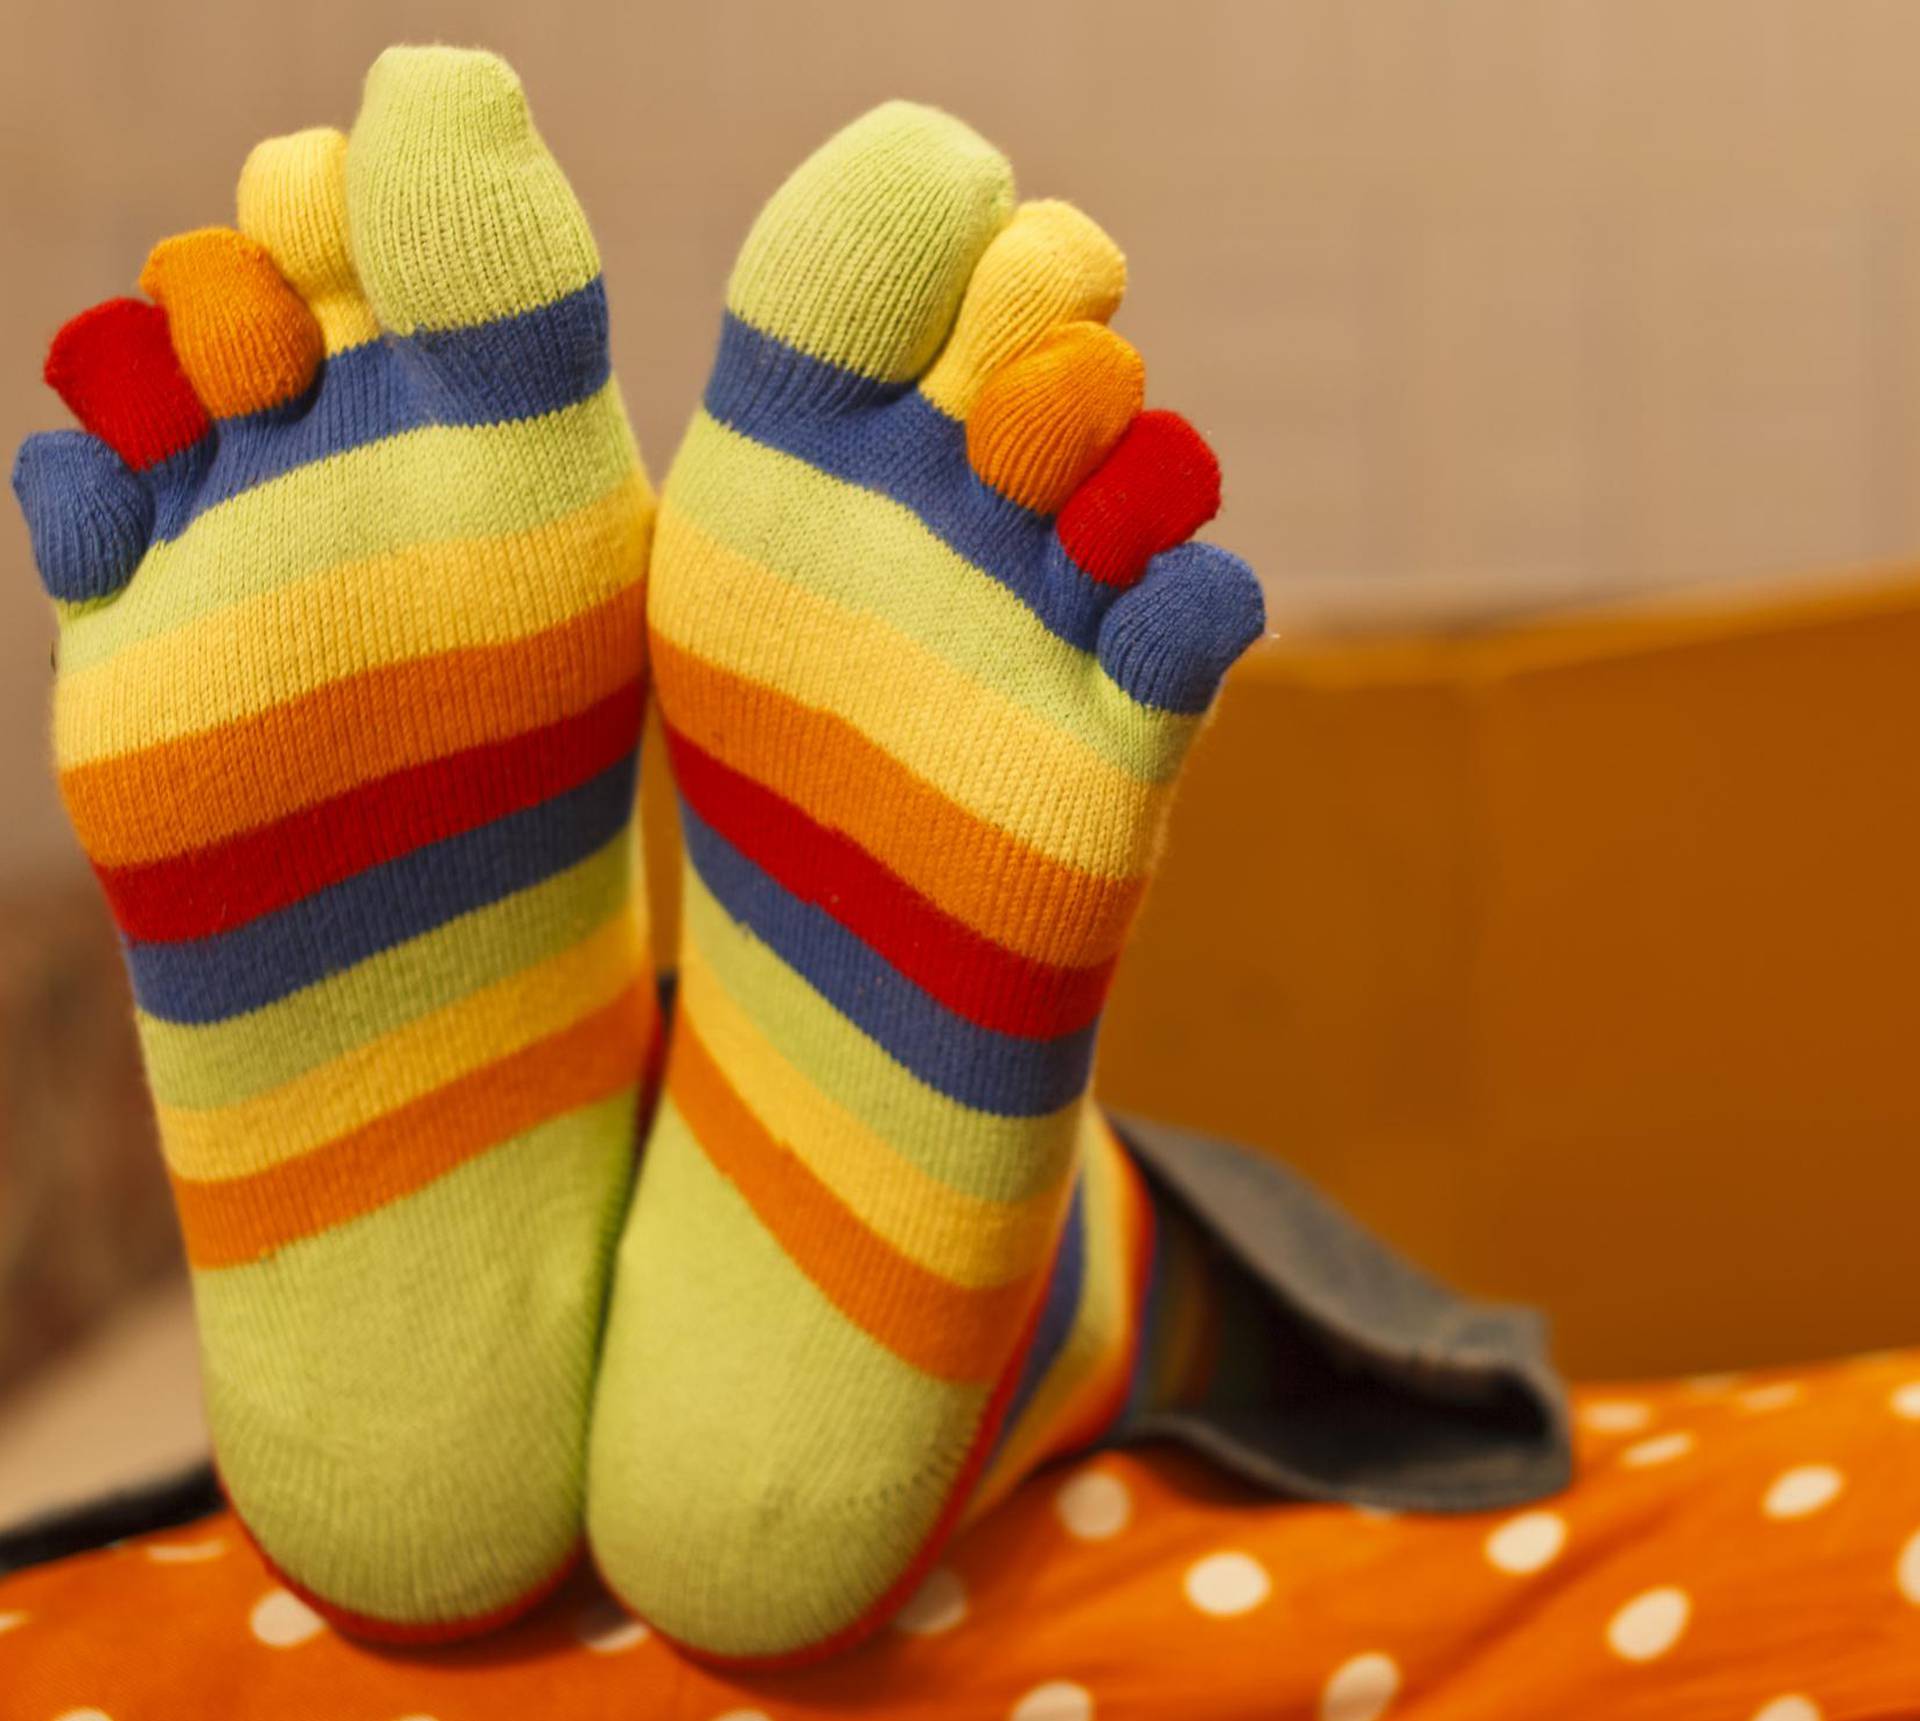 Što je bolje za kvalitetan san? Spavati u čarapama ili bez njih